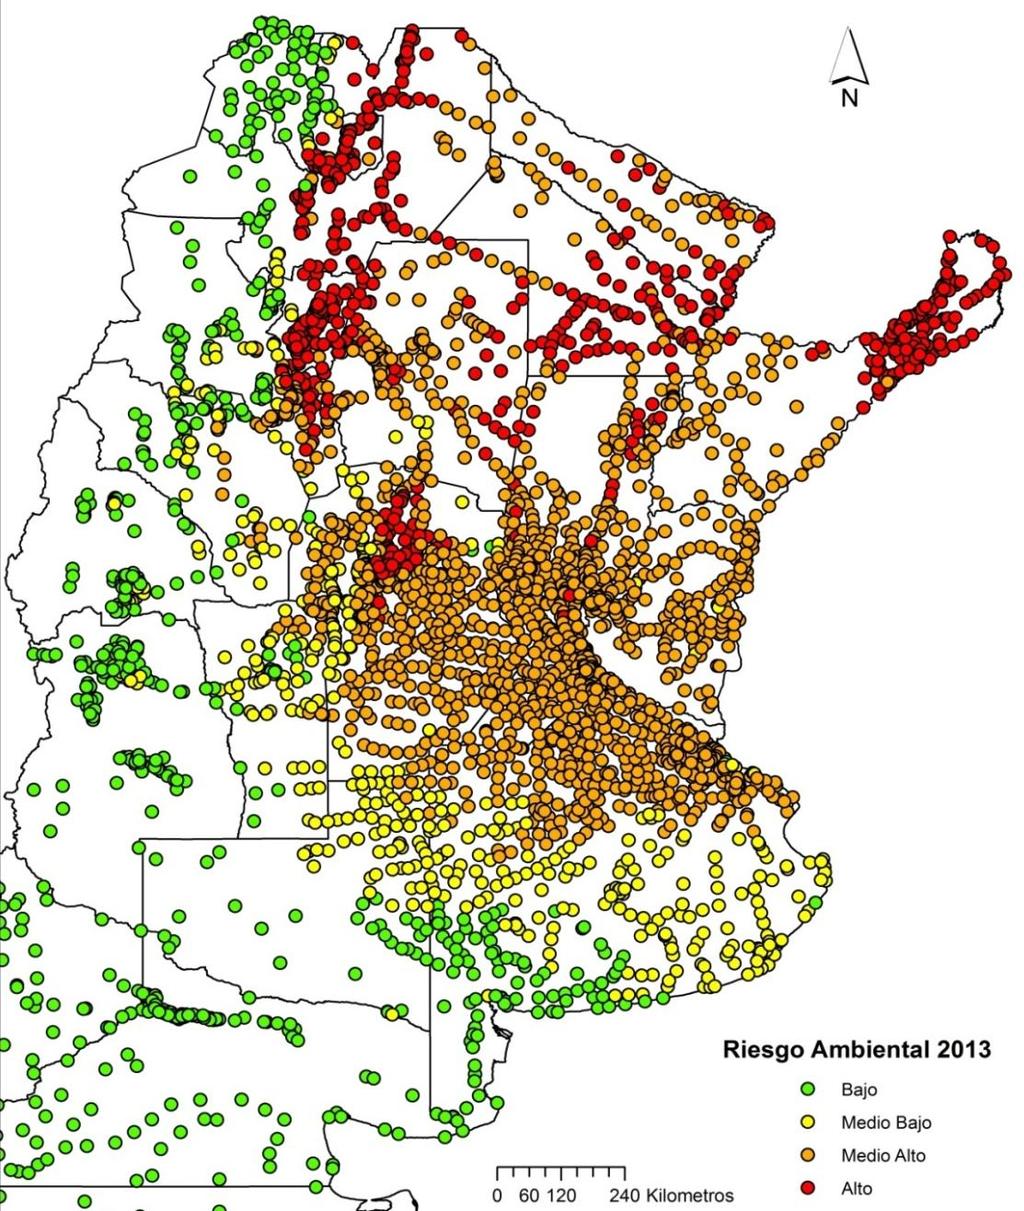 Estratificación de localidades según riesgo ambiental de transmisión de Dengue (n = 2580) Fuente: